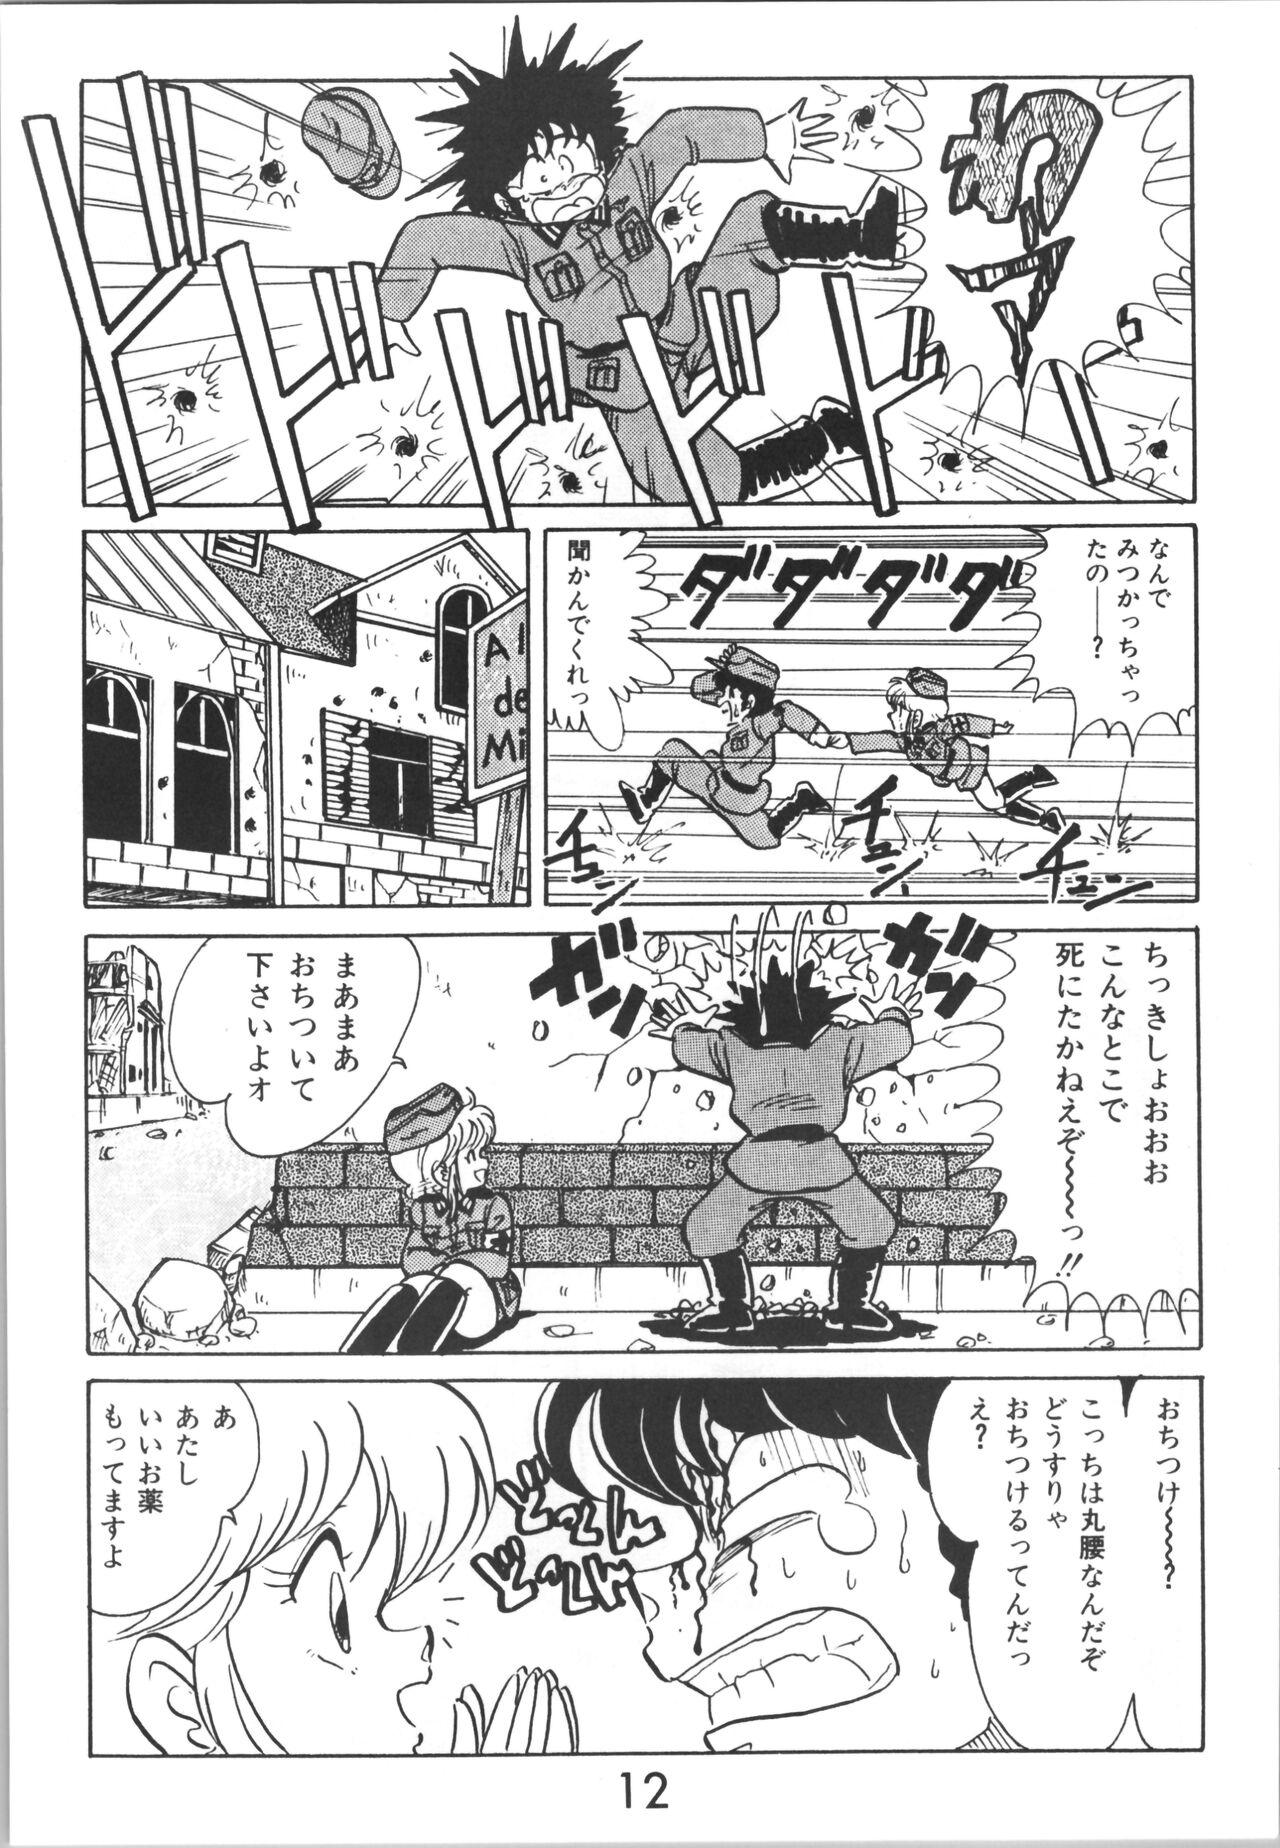 Punish Sieg Heil 2 - Ranma 12 Fudendo - Page 12